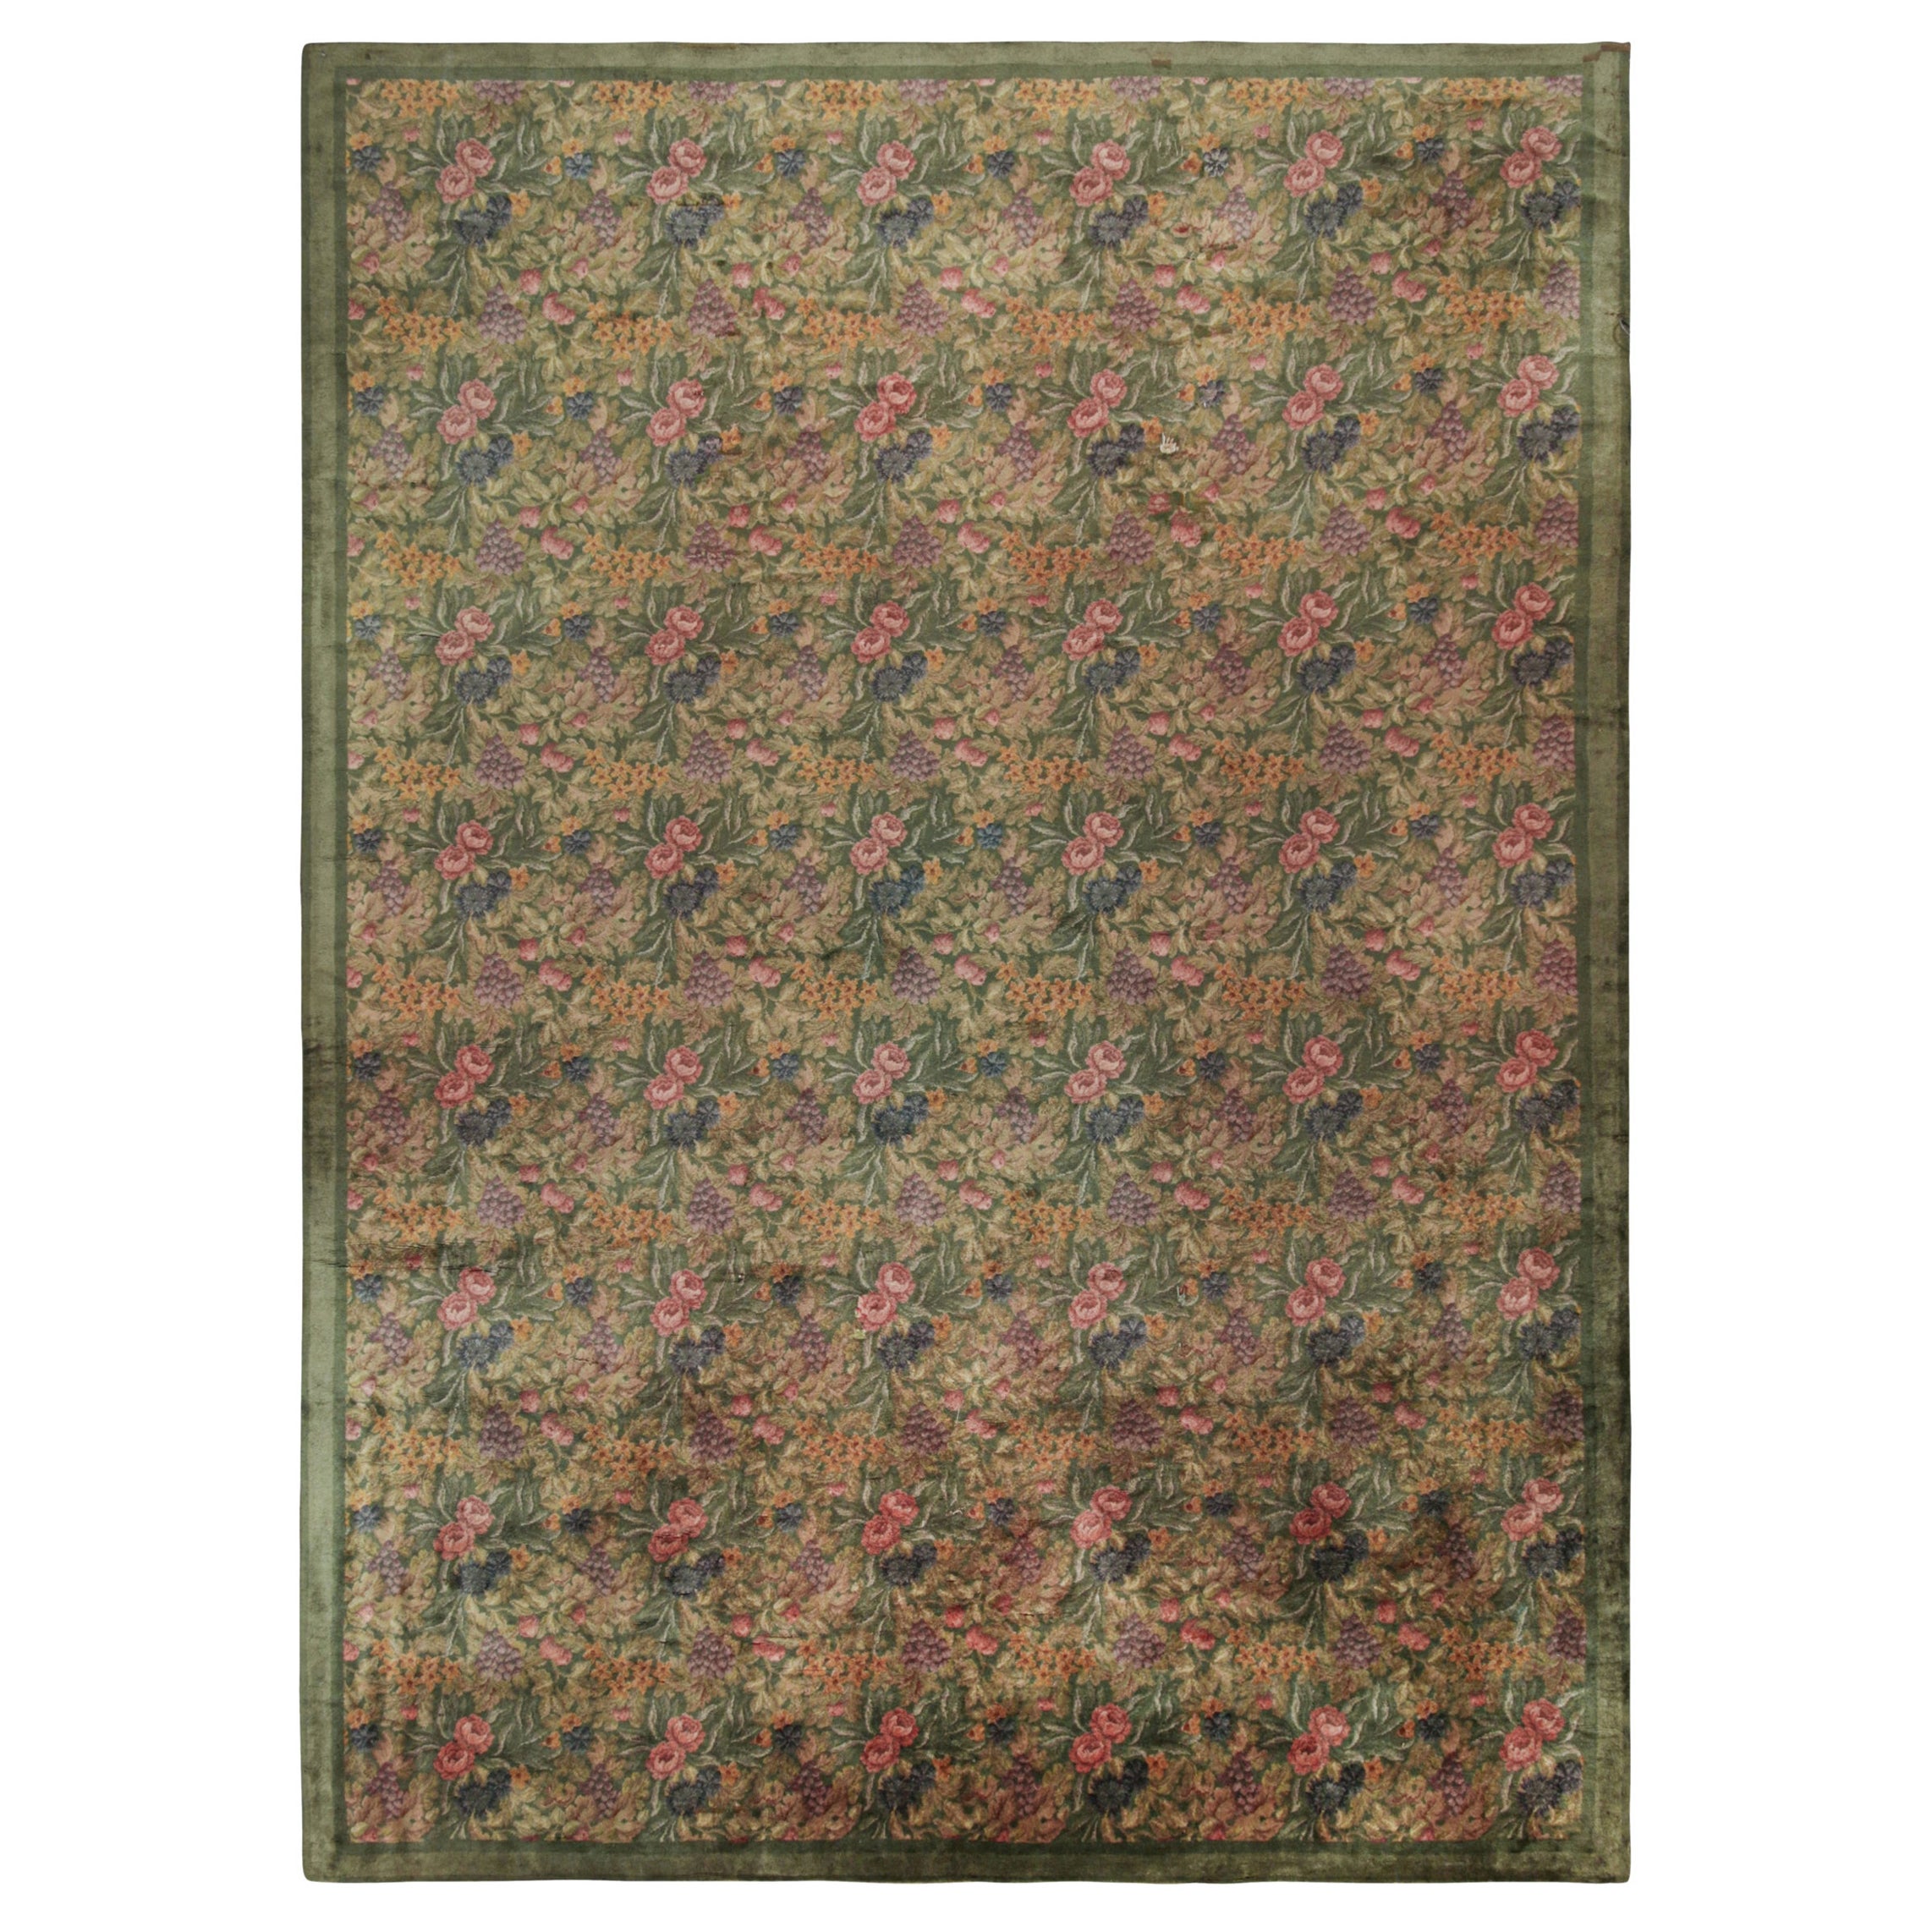 Antiker englischer Axminster-Teppich in Grün mit rosa geblümtem Design